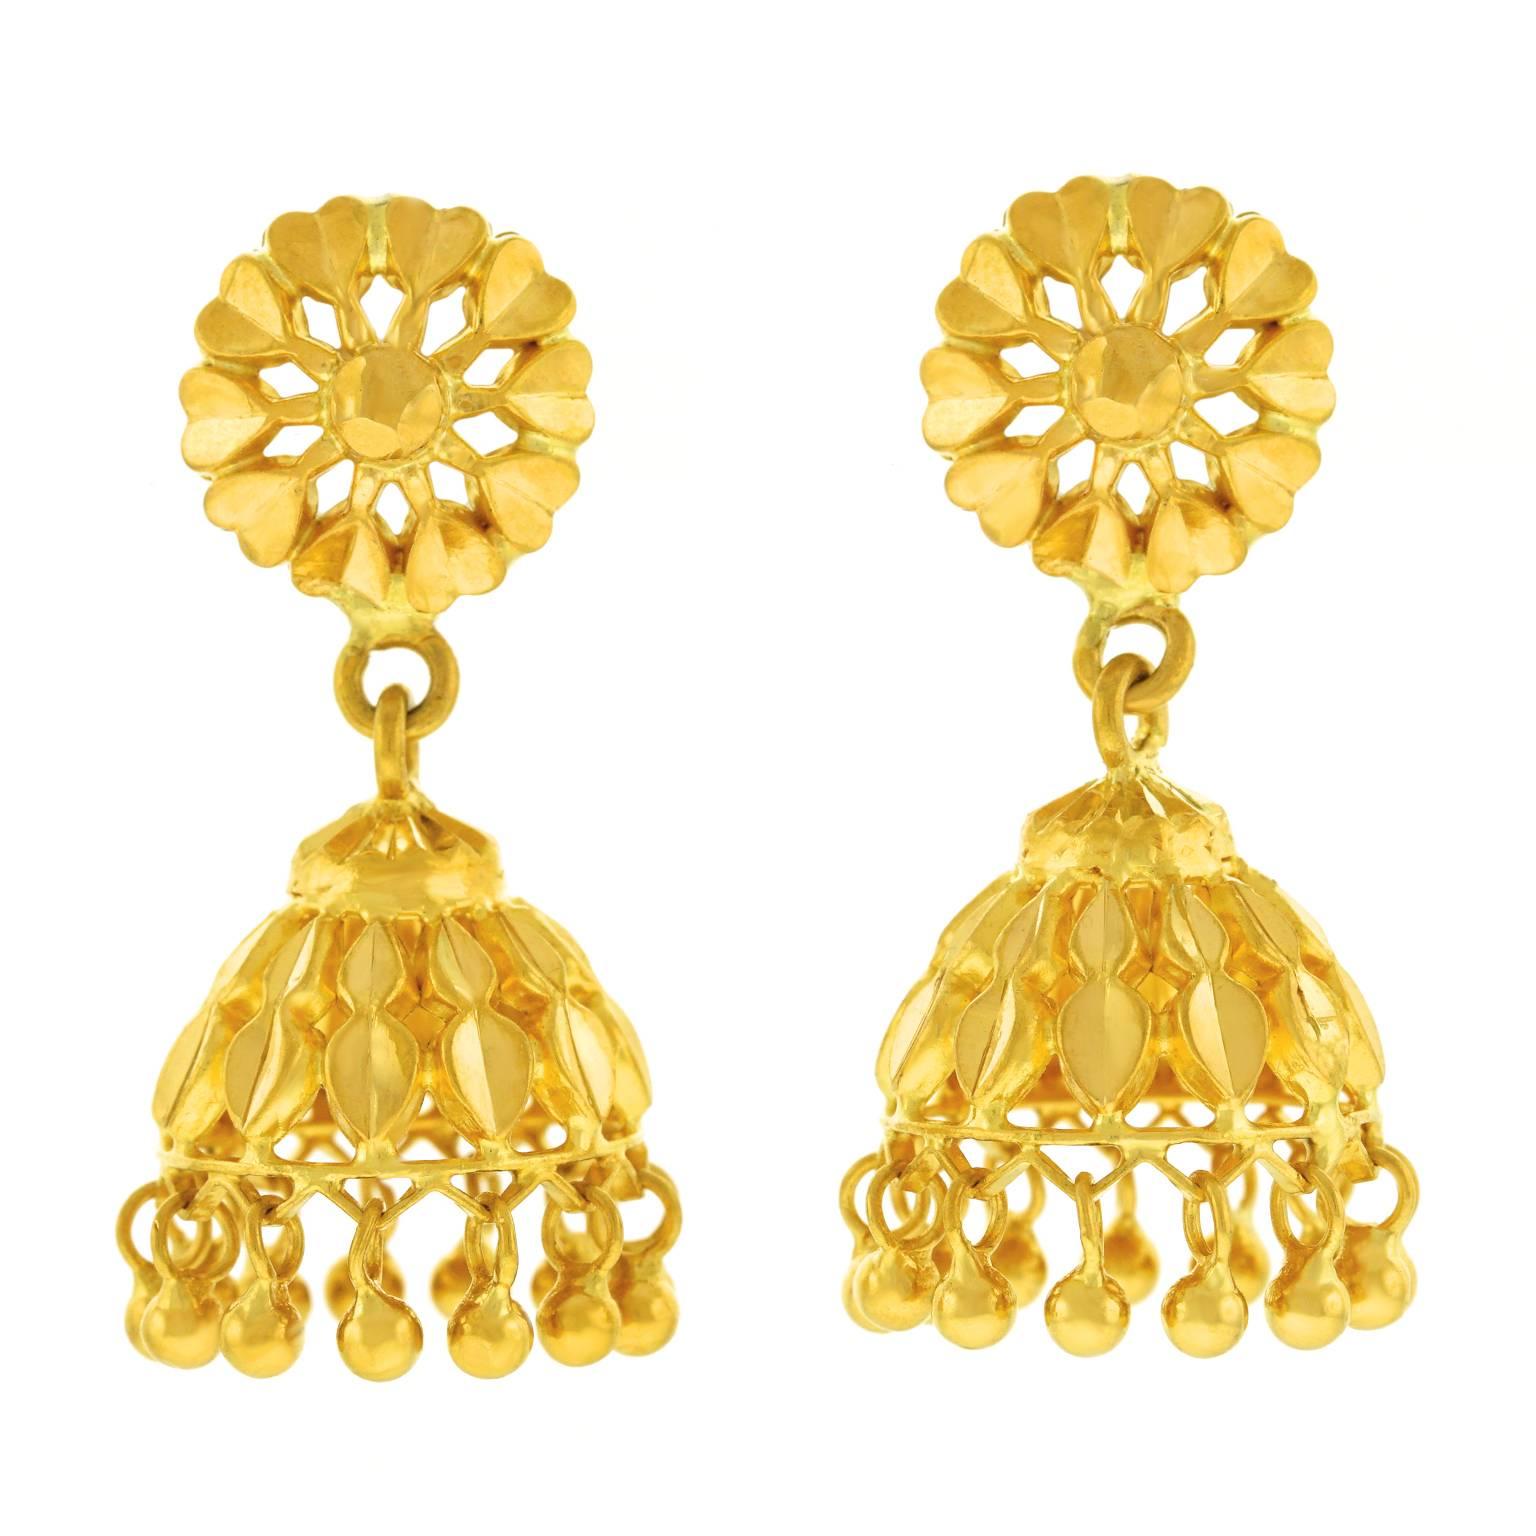 22 Karat Gold Mogul Style Earrings